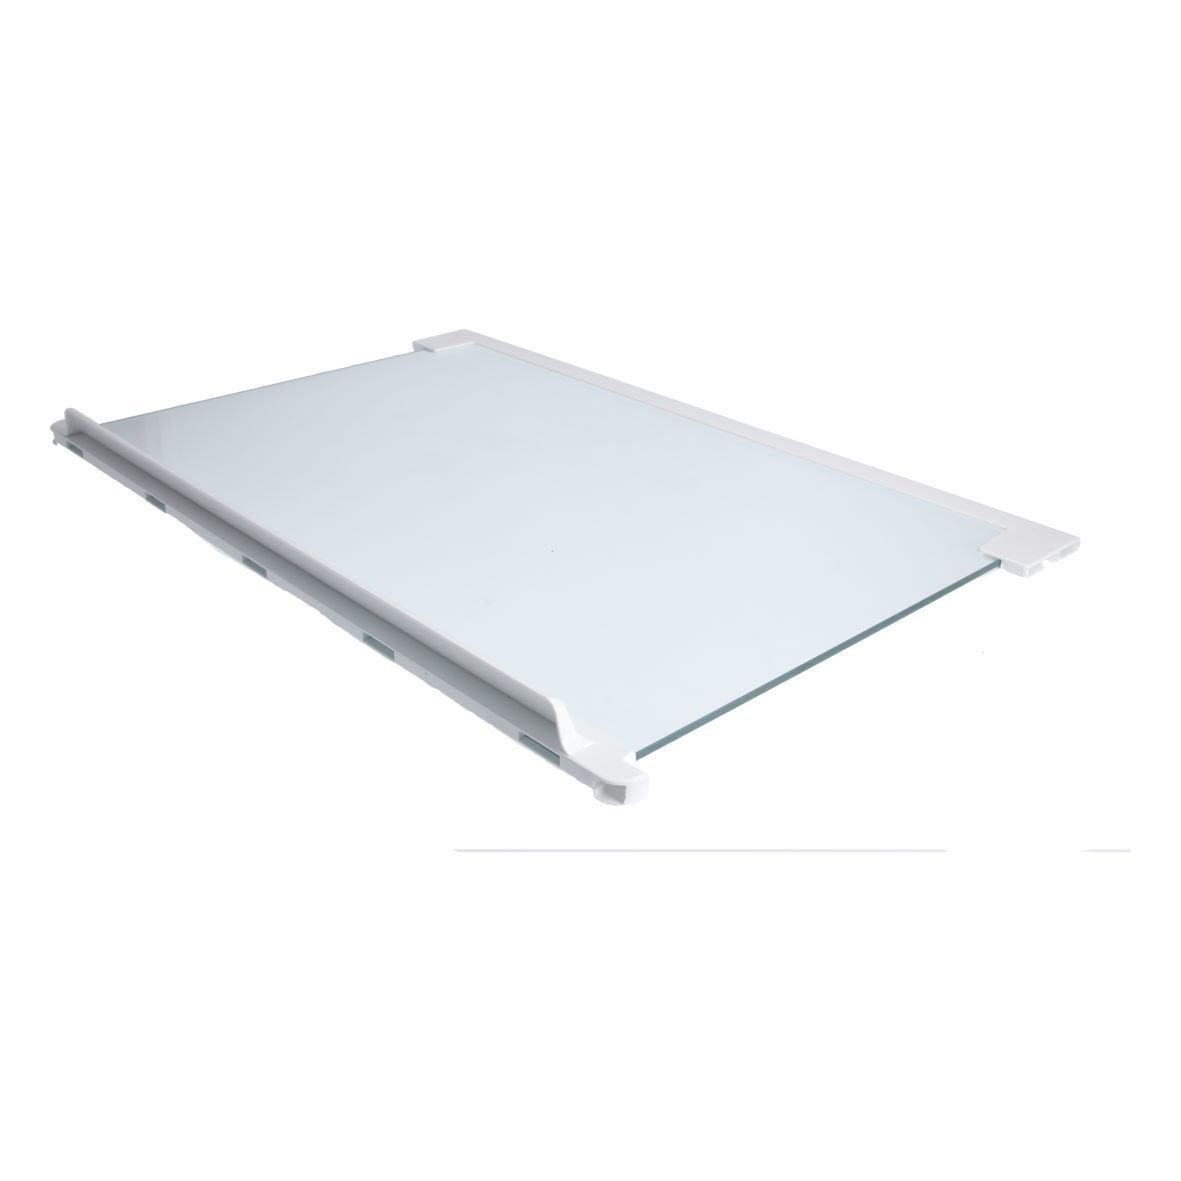 Gefriergerät easyPART / Glasplatte Electrolux Einlegeboden 2251639205 wie Kühlteil, Kühlschrank